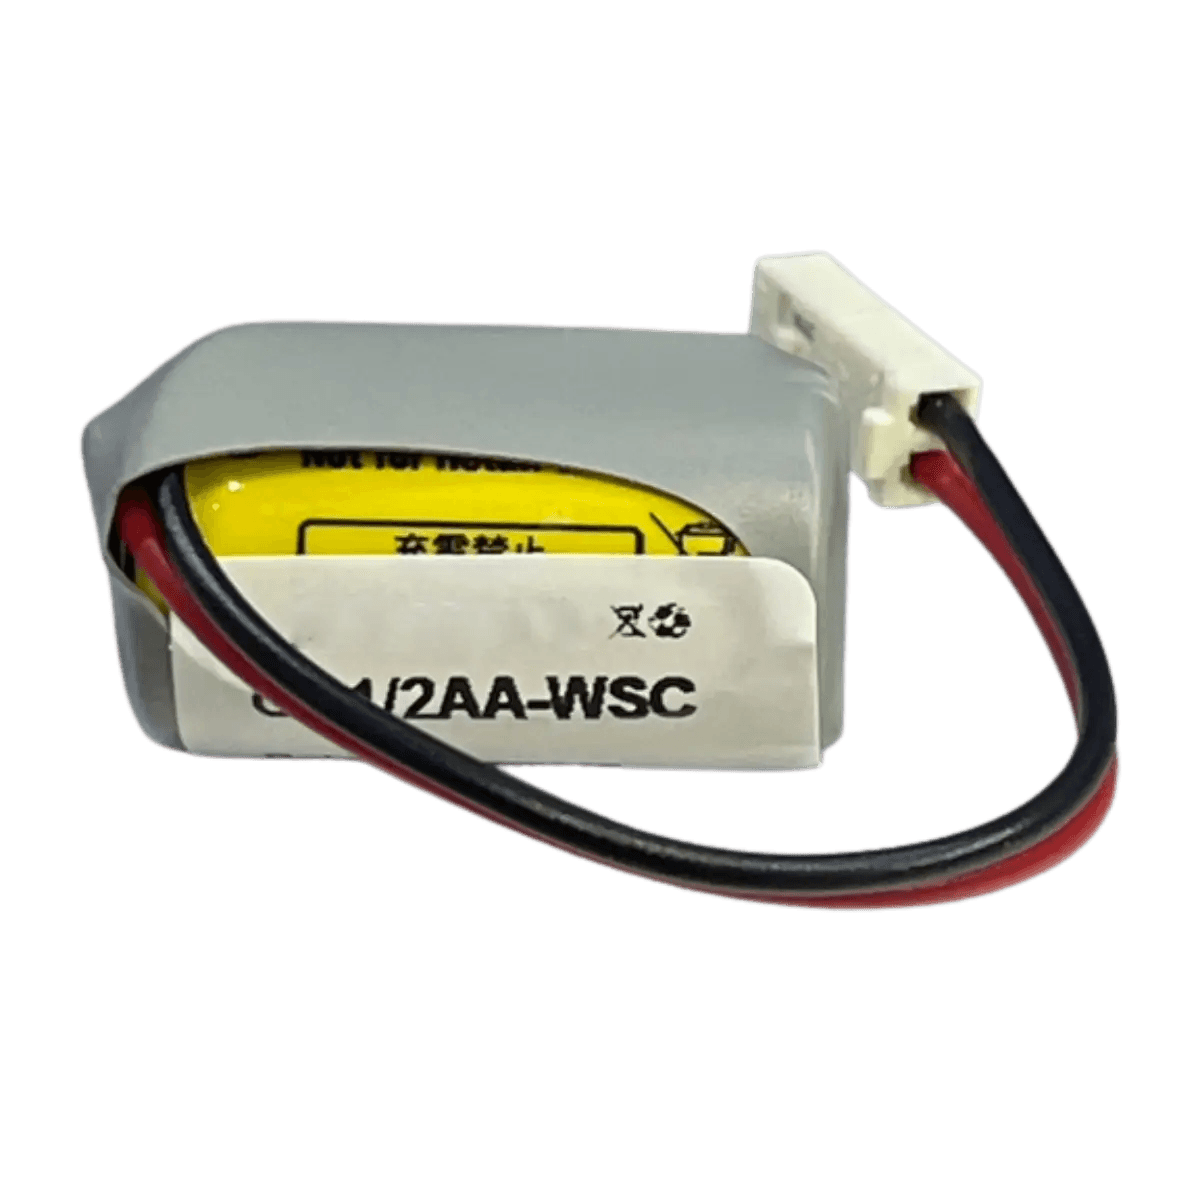 Batterie au lithium 3V CR1/2AA-WSC pour automate Siemens